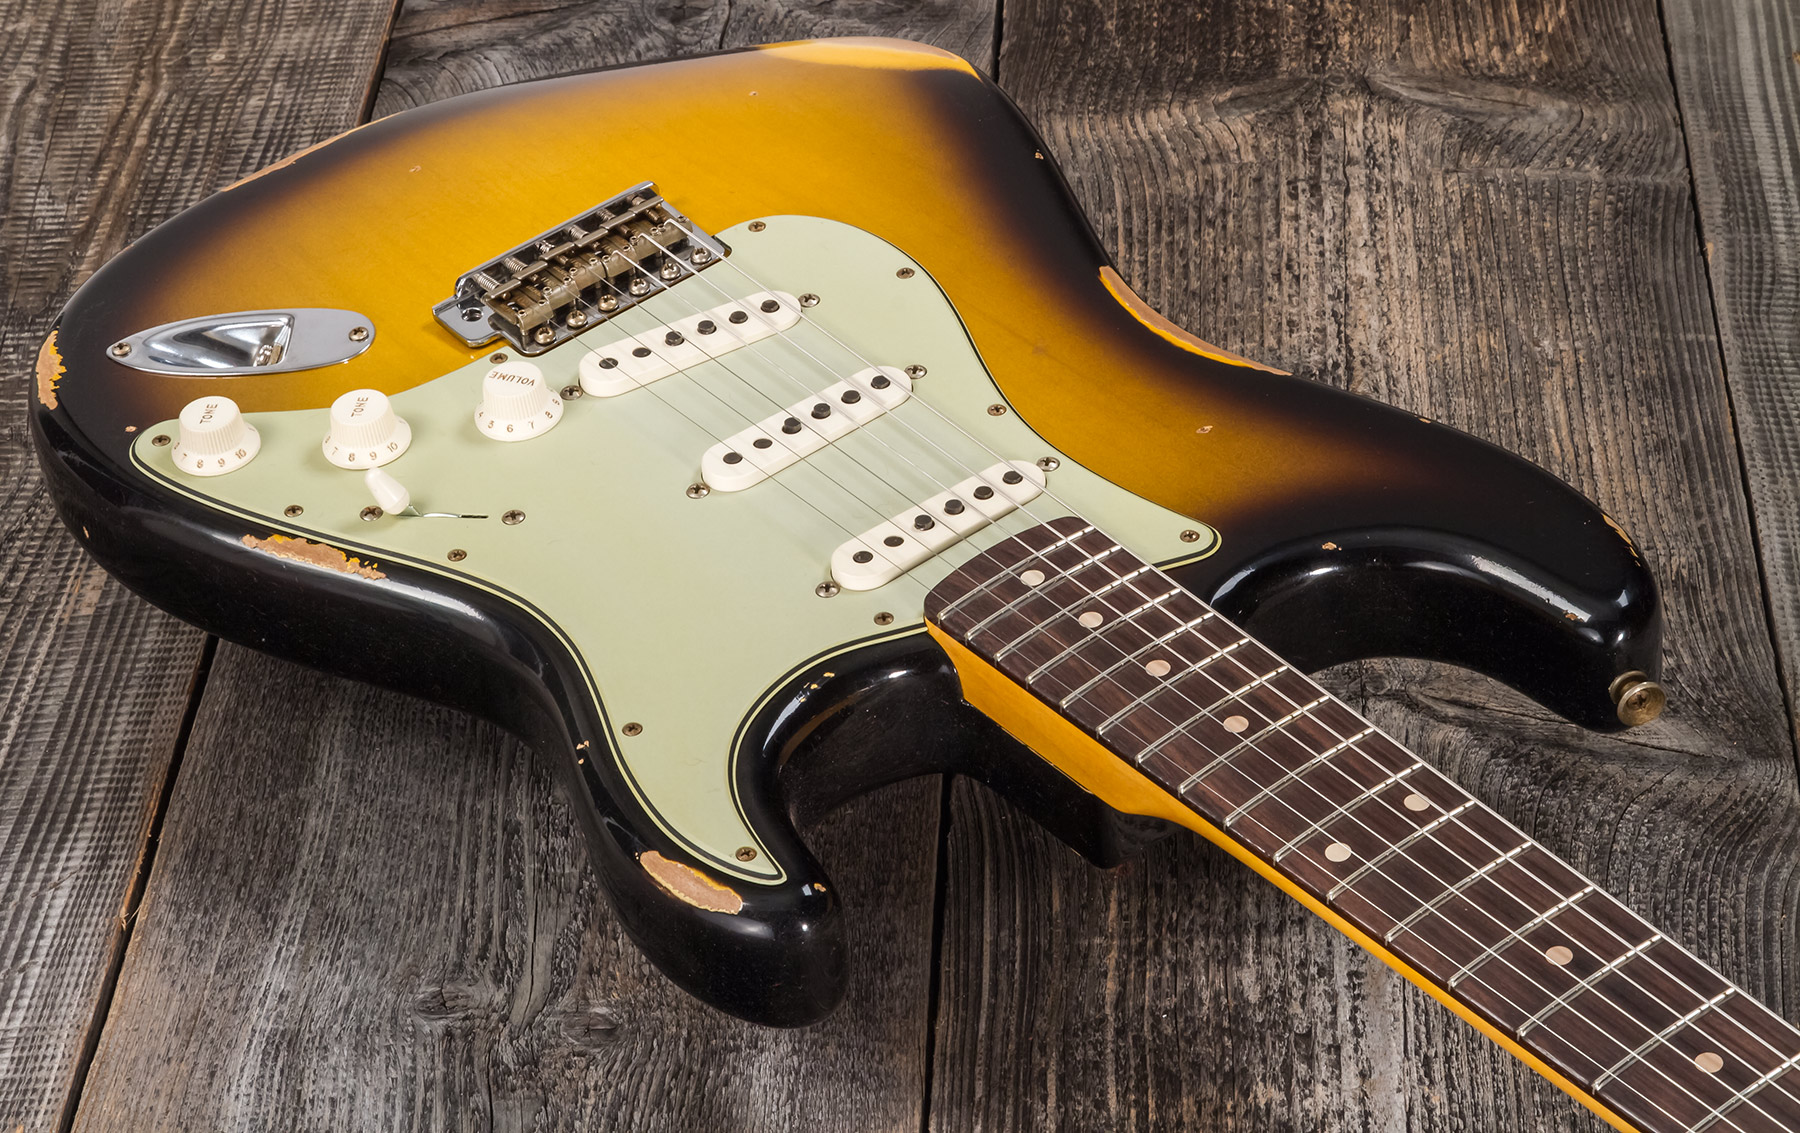 Fender Custom Shop Strat 1959 3s Trem Rw #r117661 - Relic 2-color Sunburst - Str shape electric guitar - Variation 2